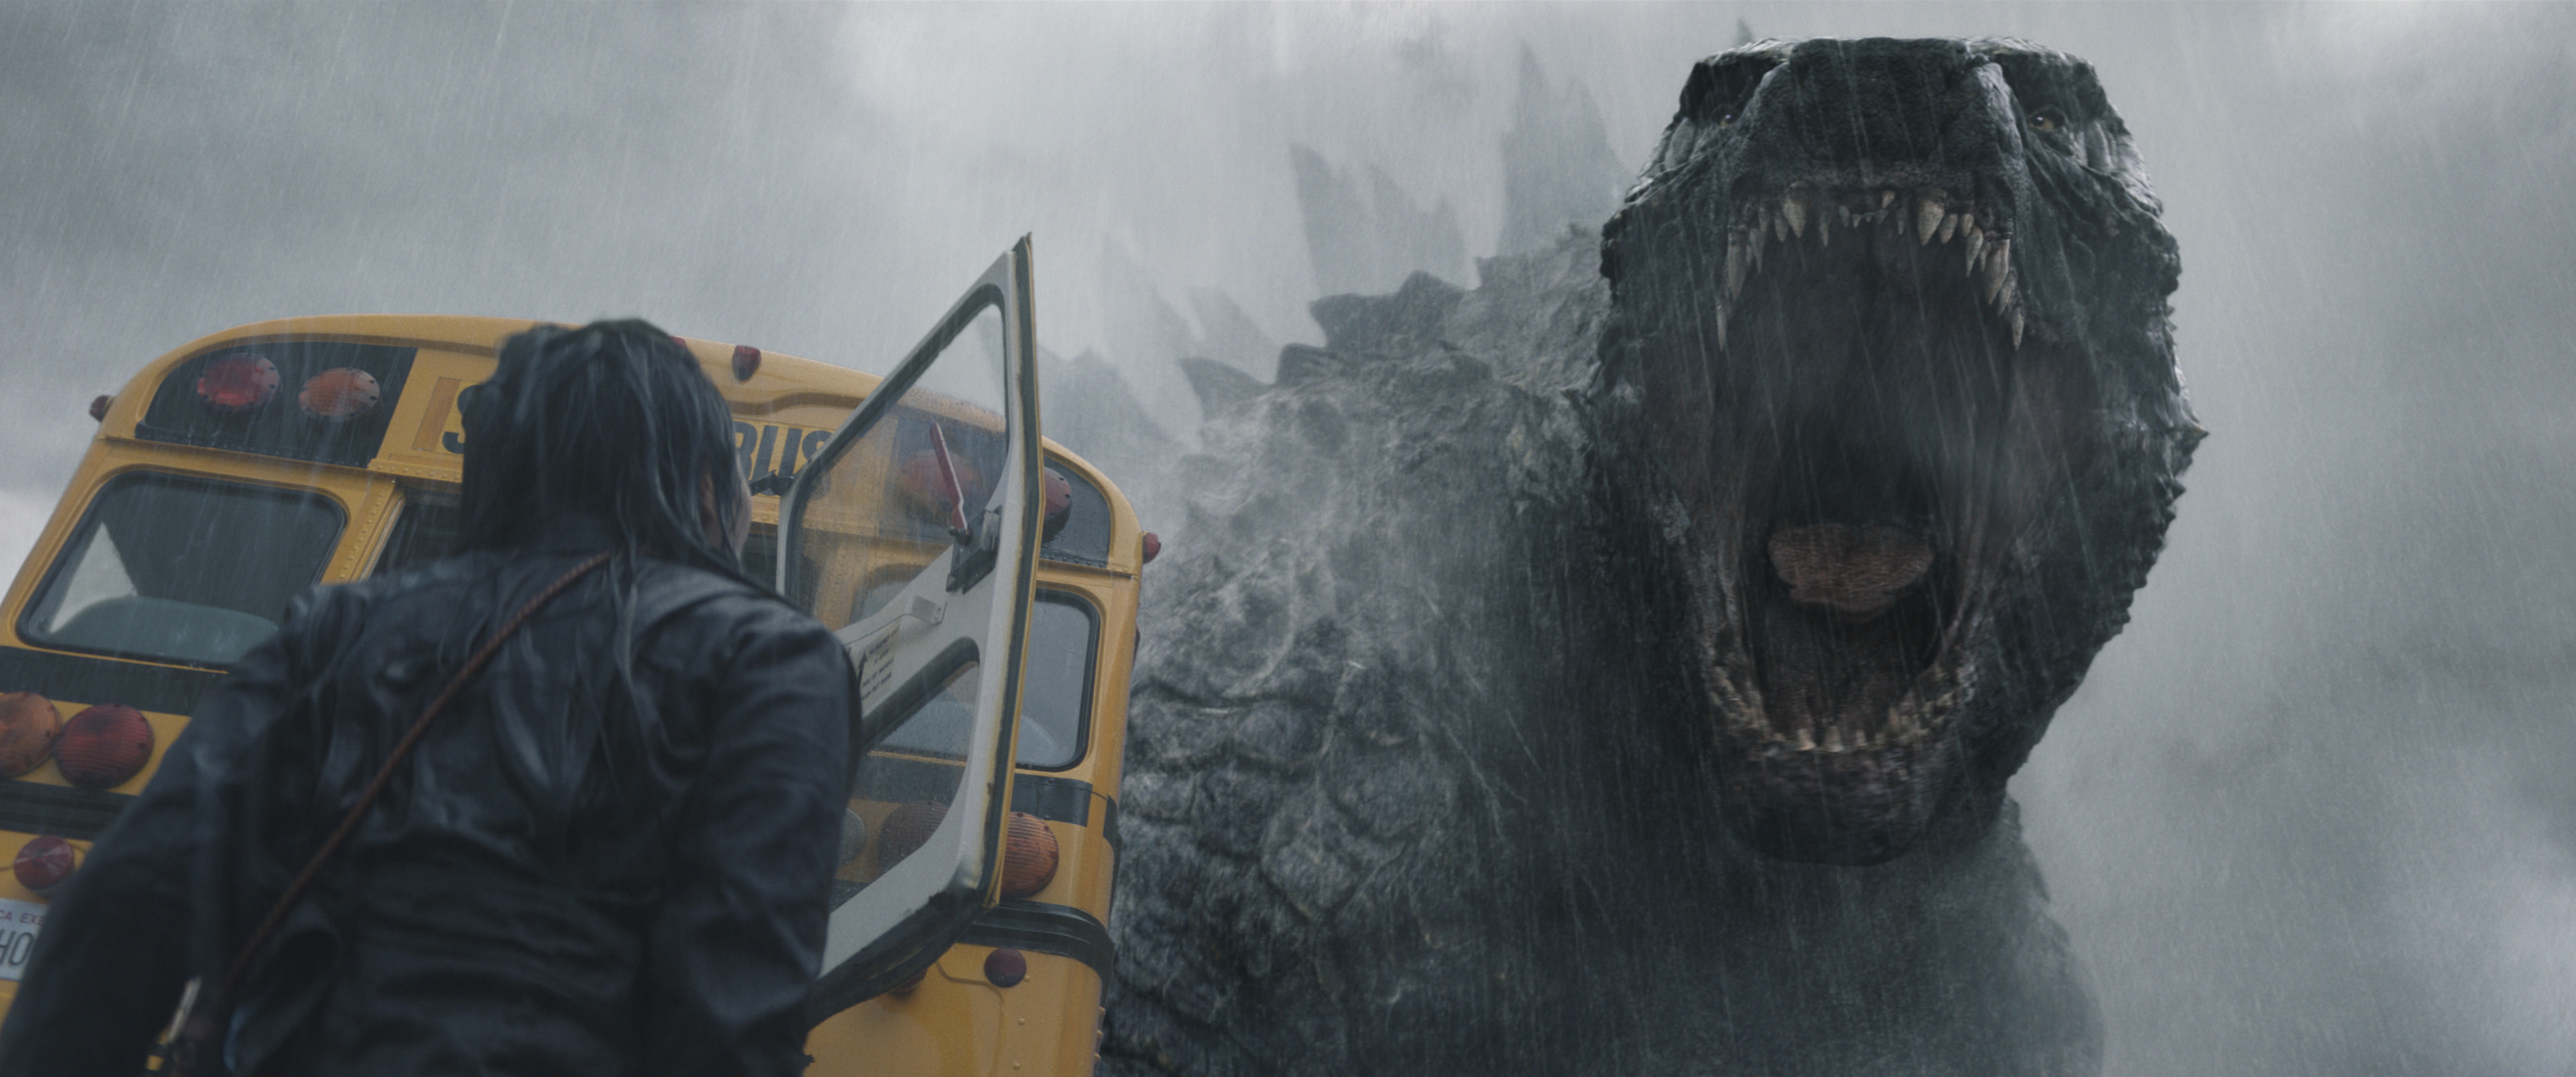 Monarch Legacy of Monsters : Godzilla de retour sur les premières images de la série